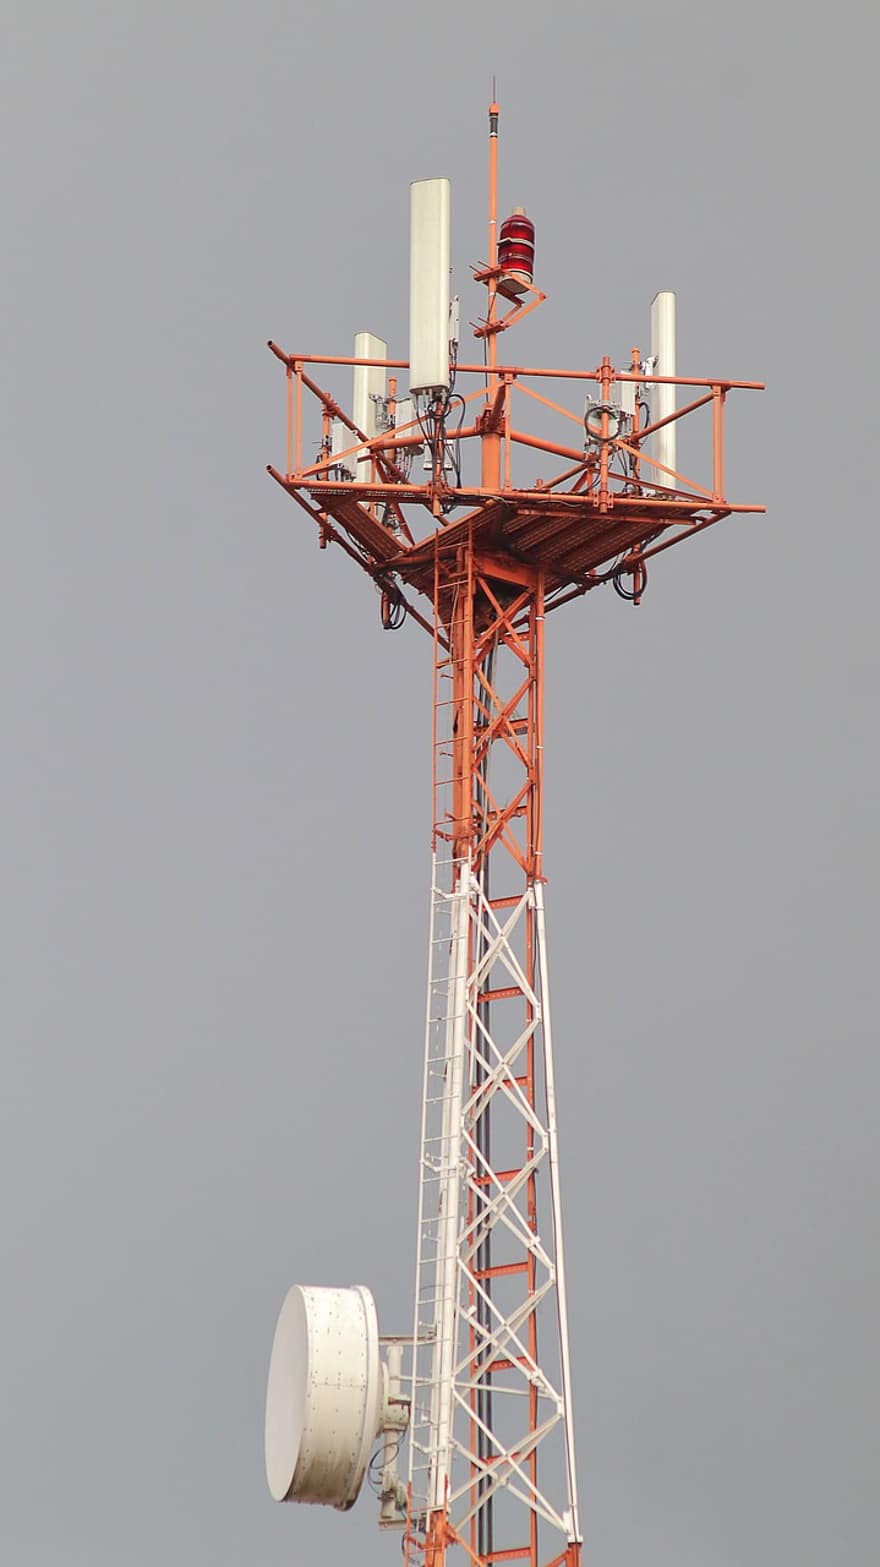 telekommunikasjonstårn, radio mast, tårn, antenne, mast, struktur, telekommunikasjon, Frekvens, overføring, forbindelse